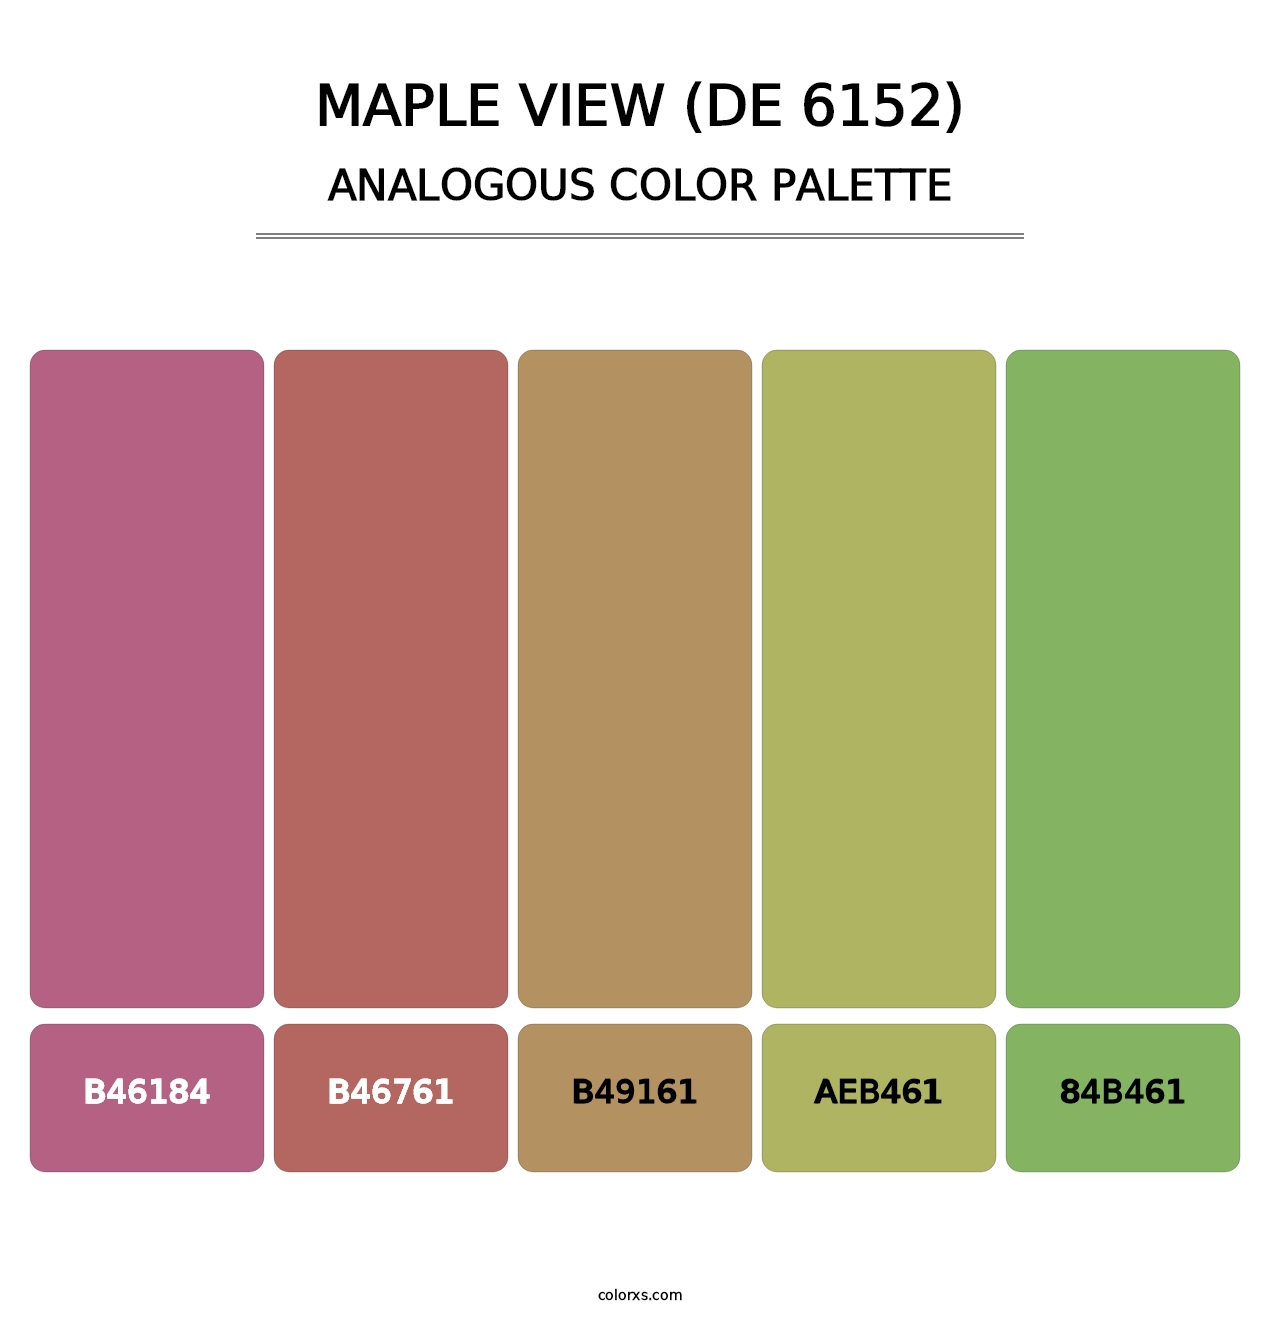 Maple View (DE 6152) - Analogous Color Palette